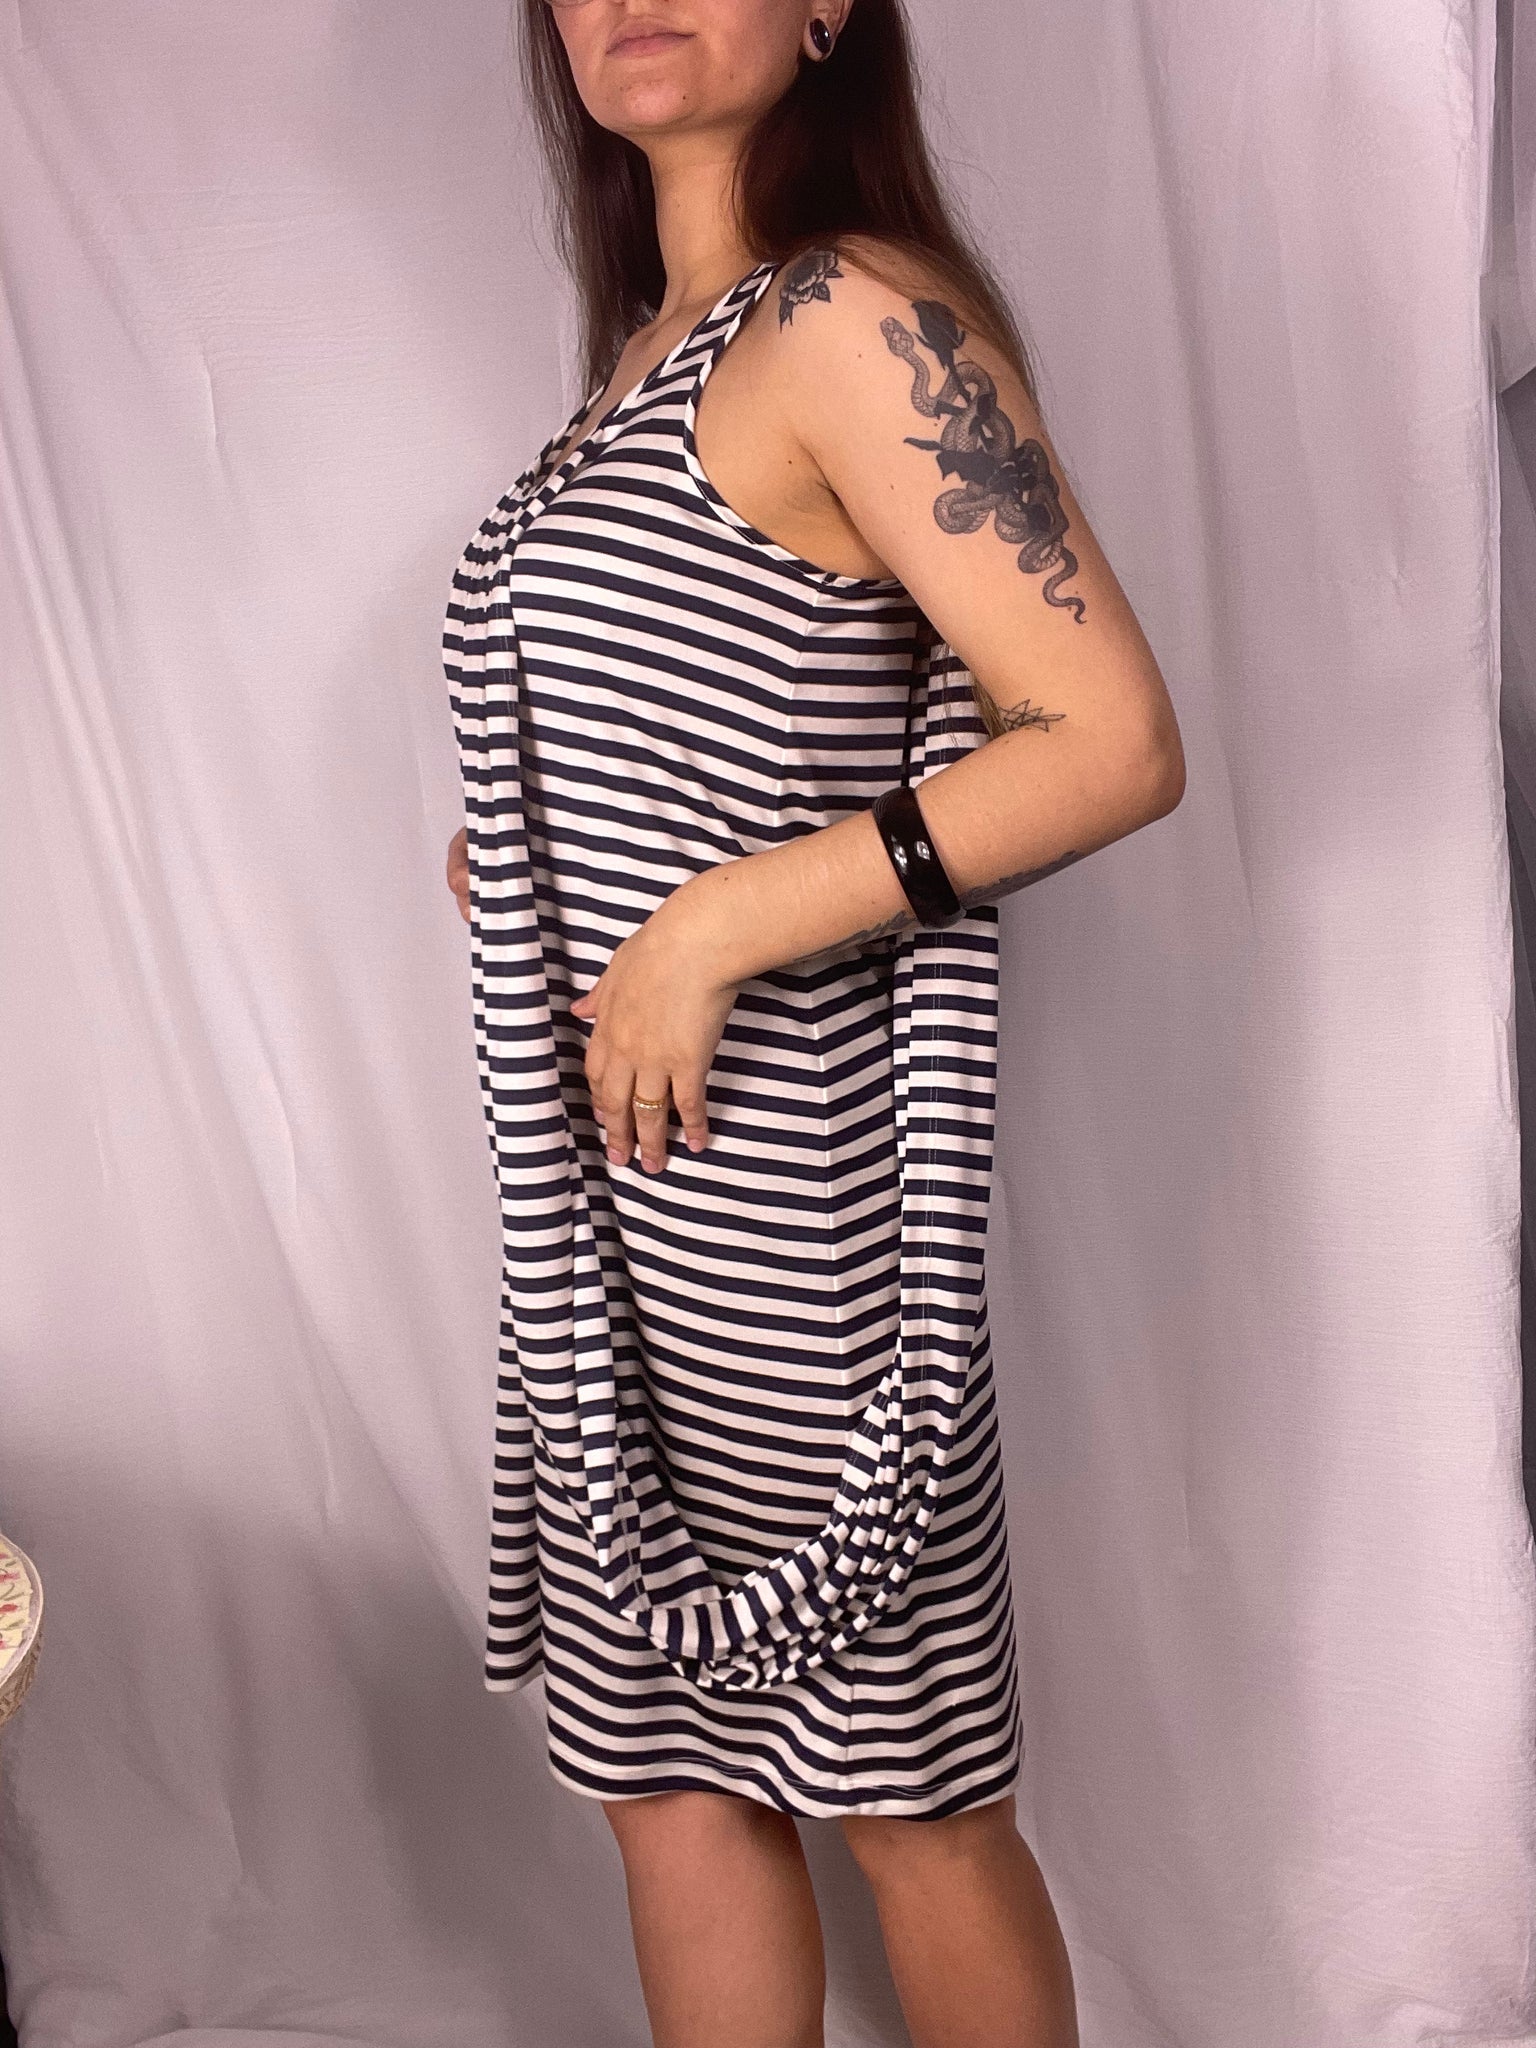 Jean Paul Gaultier X Target dress, Size M